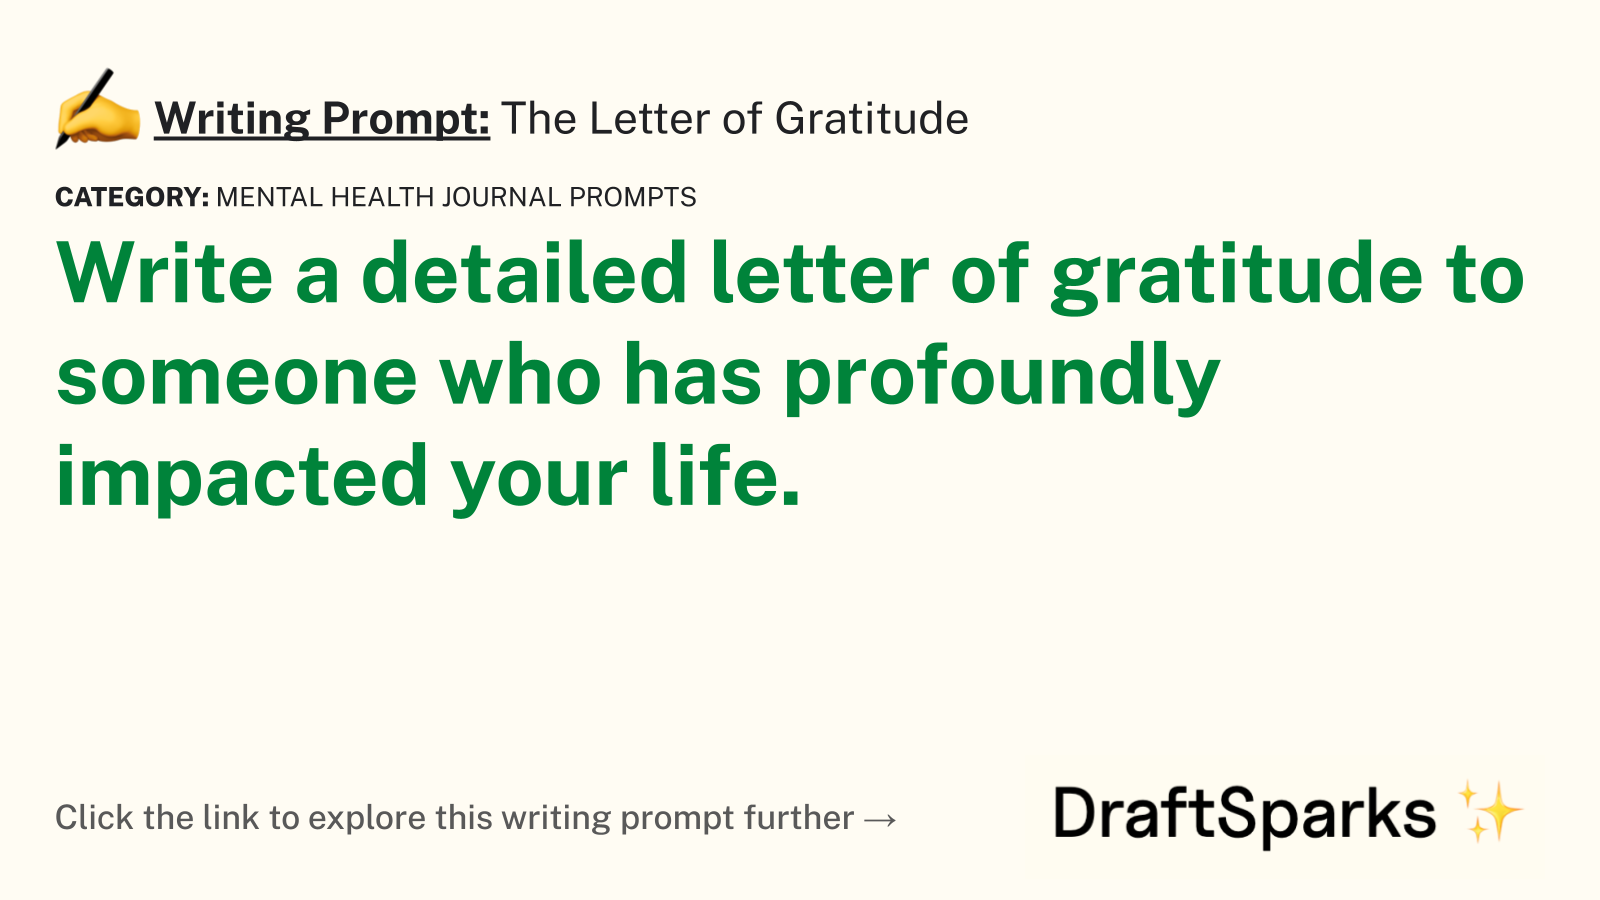 The Letter of Gratitude